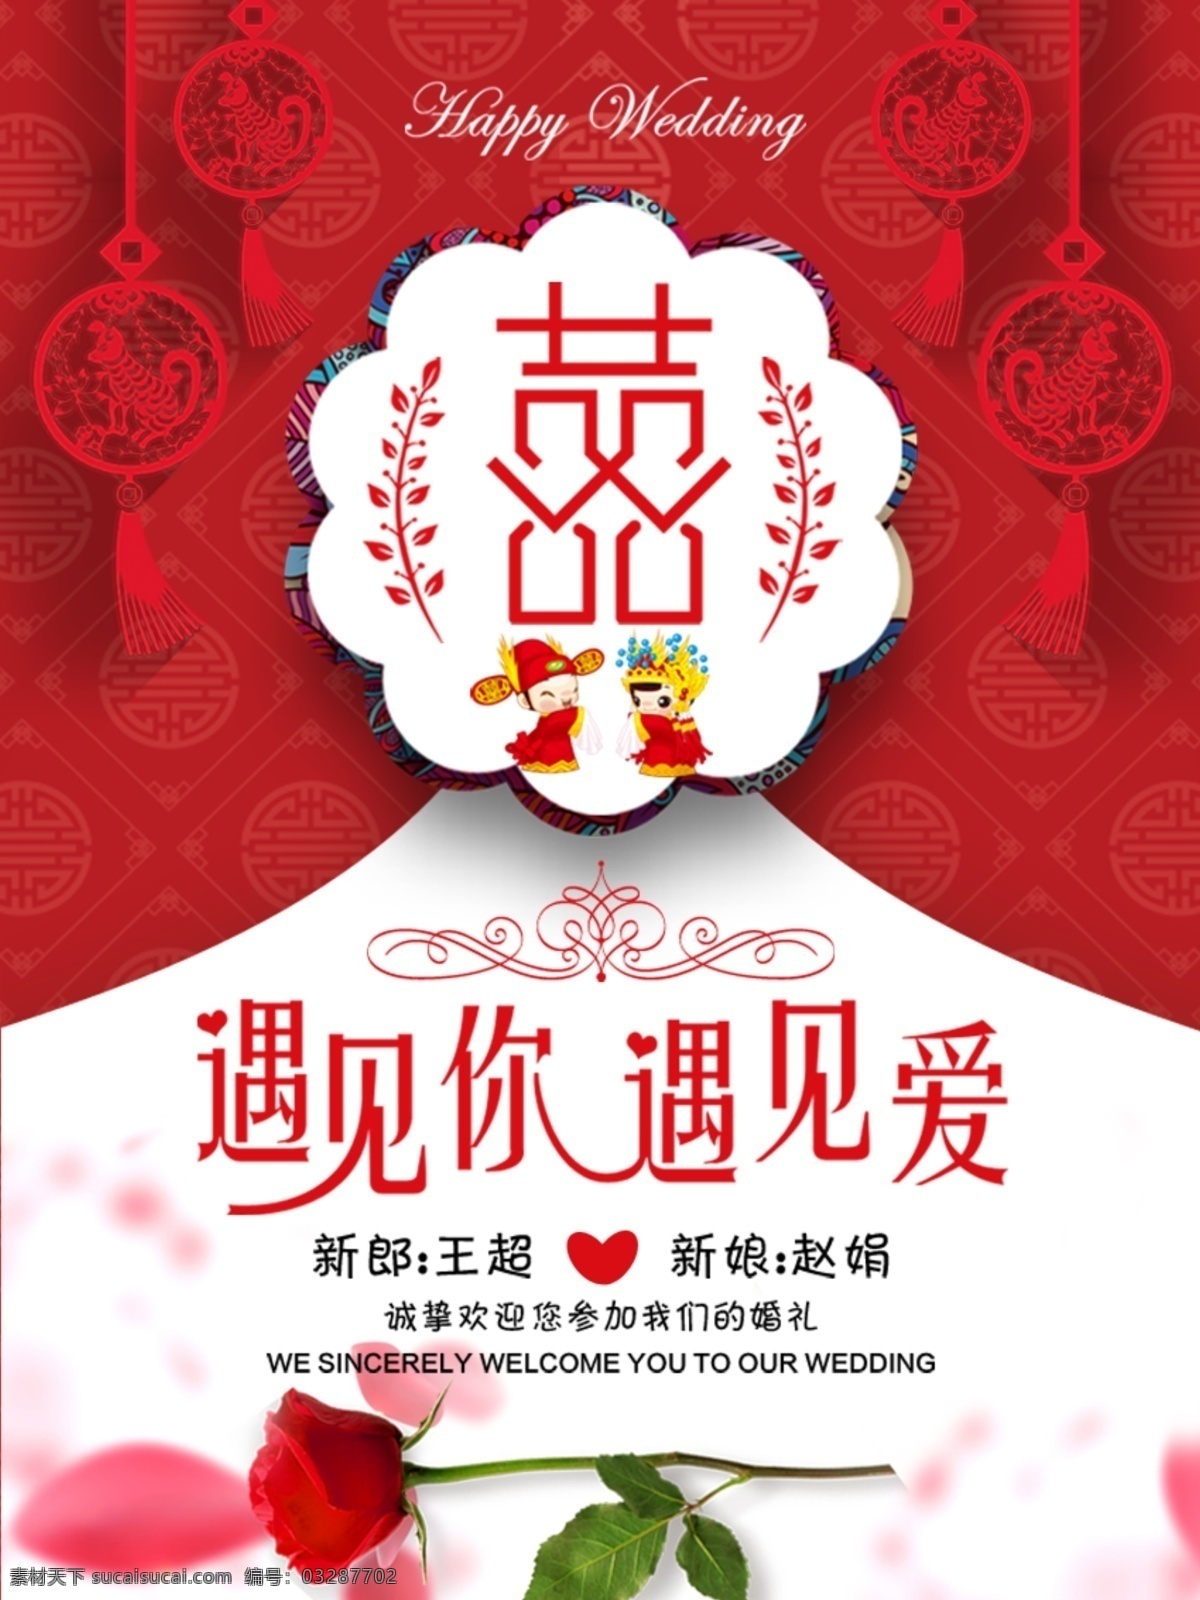 婚礼 海报 中式 婚礼海报 中国风海报 红色海报 邀请函 婚礼请柬 婚礼邀请函 中式婚礼 中国 风 传统婚礼 传统结婚海报